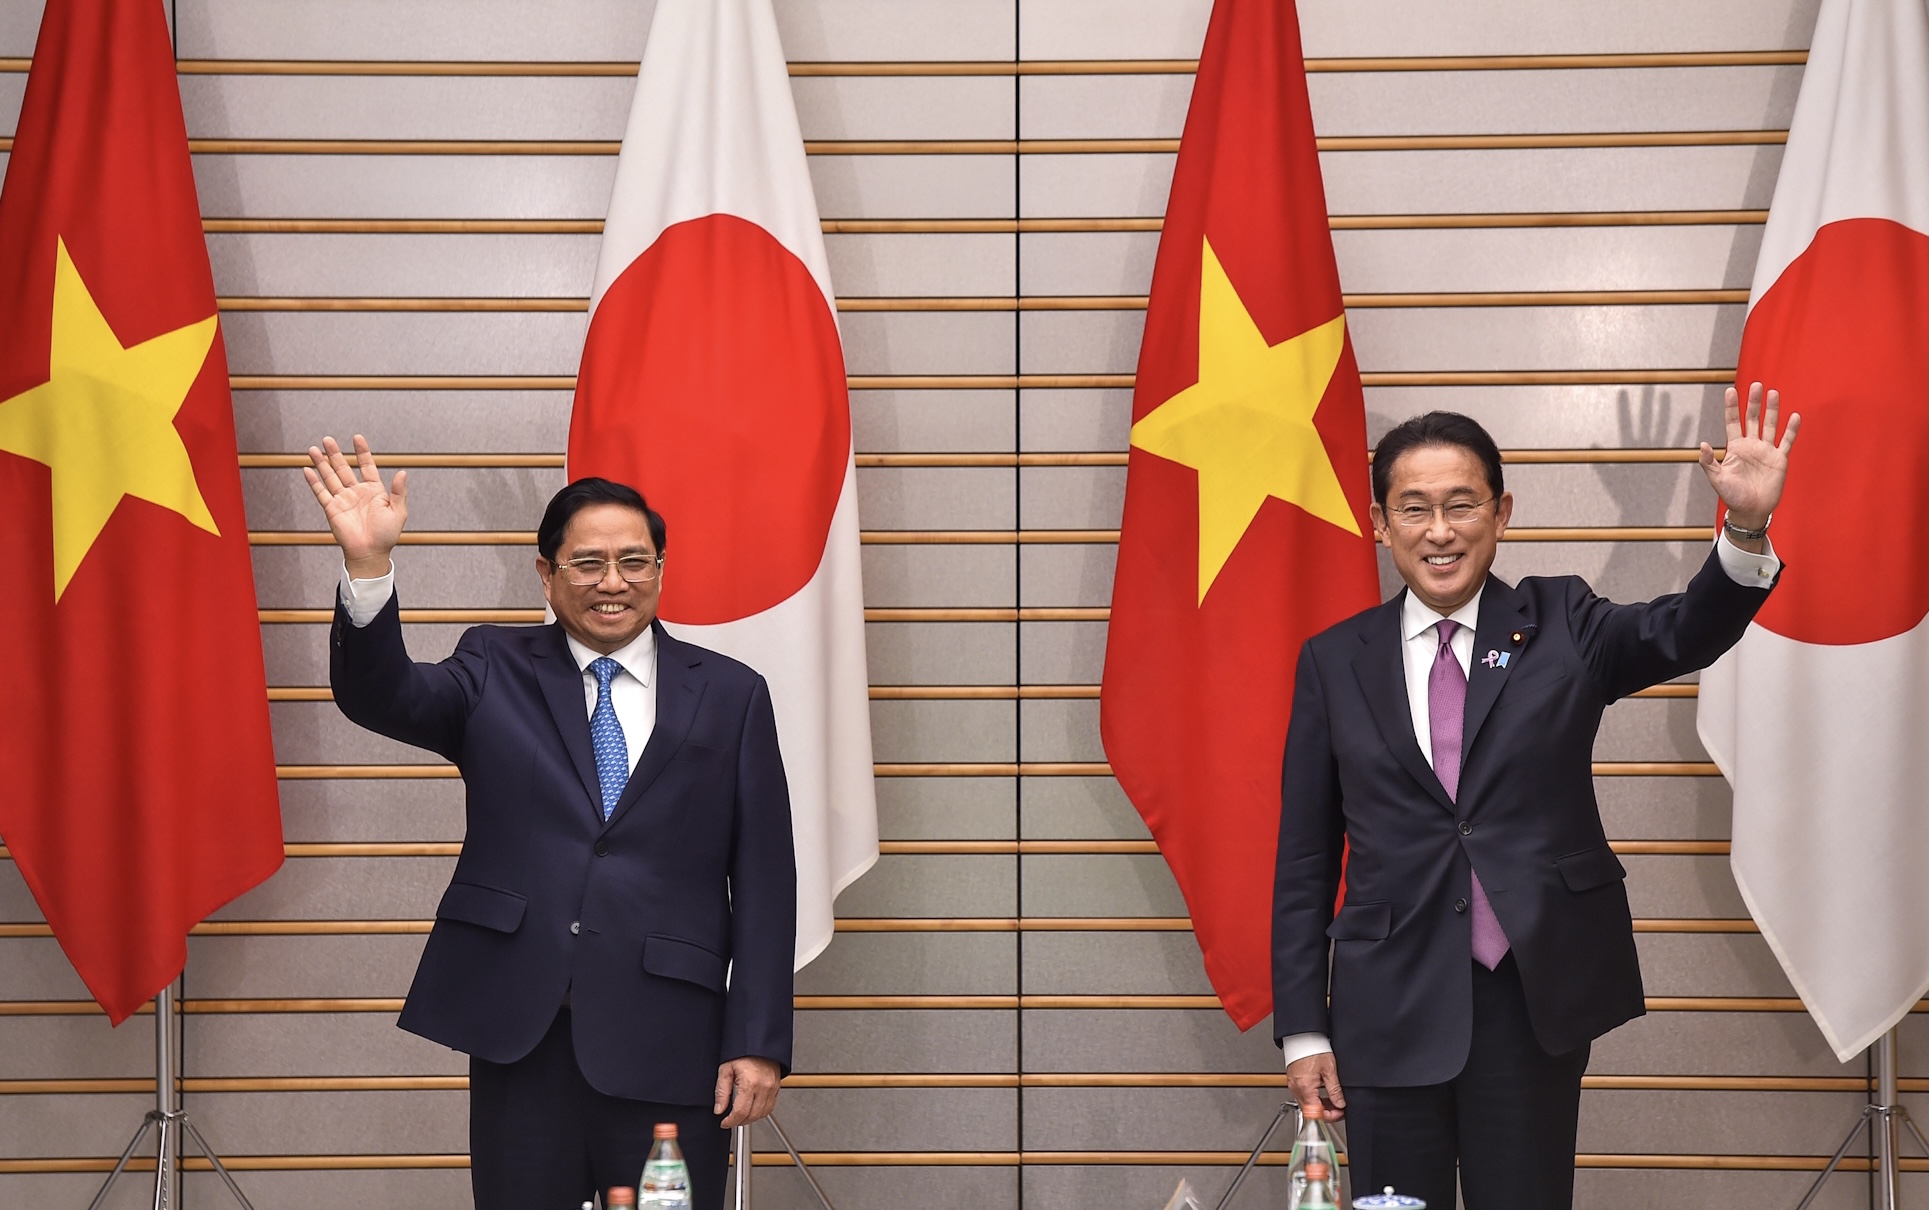 Hai Thủ tướng Việt Nam – Nhật Bản hội đàm - ngoại giao: Việt Nam và Nhật Bản từ lâu đã có một mối quan hệ ngoại giao tốt đẹp, và trong năm 2024, hai Thủ tướng Việt Nam và Nhật Bản tiếp tục đưa ra những ý tưởng và định hướng cho mối quan hệ đó. Hình ảnh của hai nhà lãnh đạo này đang gặp gỡ và trao đổi sẽ khiến bạn cảm thấy phấn khích về sự phát triển của quan hệ Việt - Nhật.